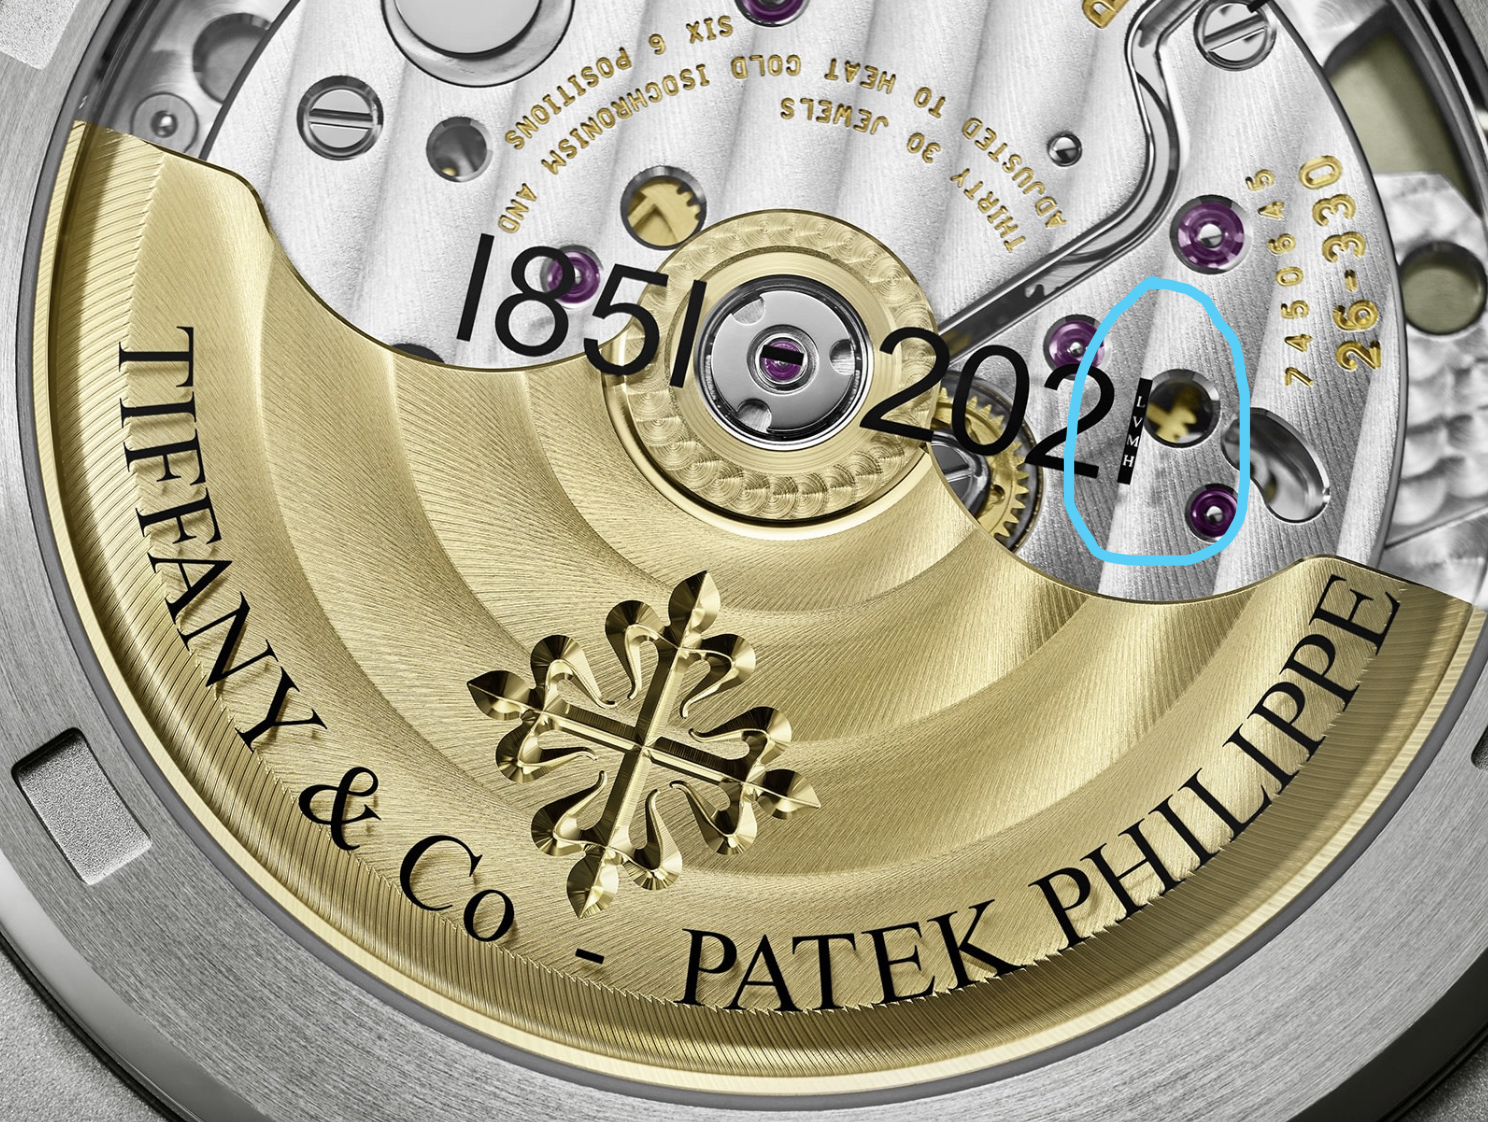 Patek Philippe Tiffany Nautilus Ref. 5711-1A-018 caseback signature